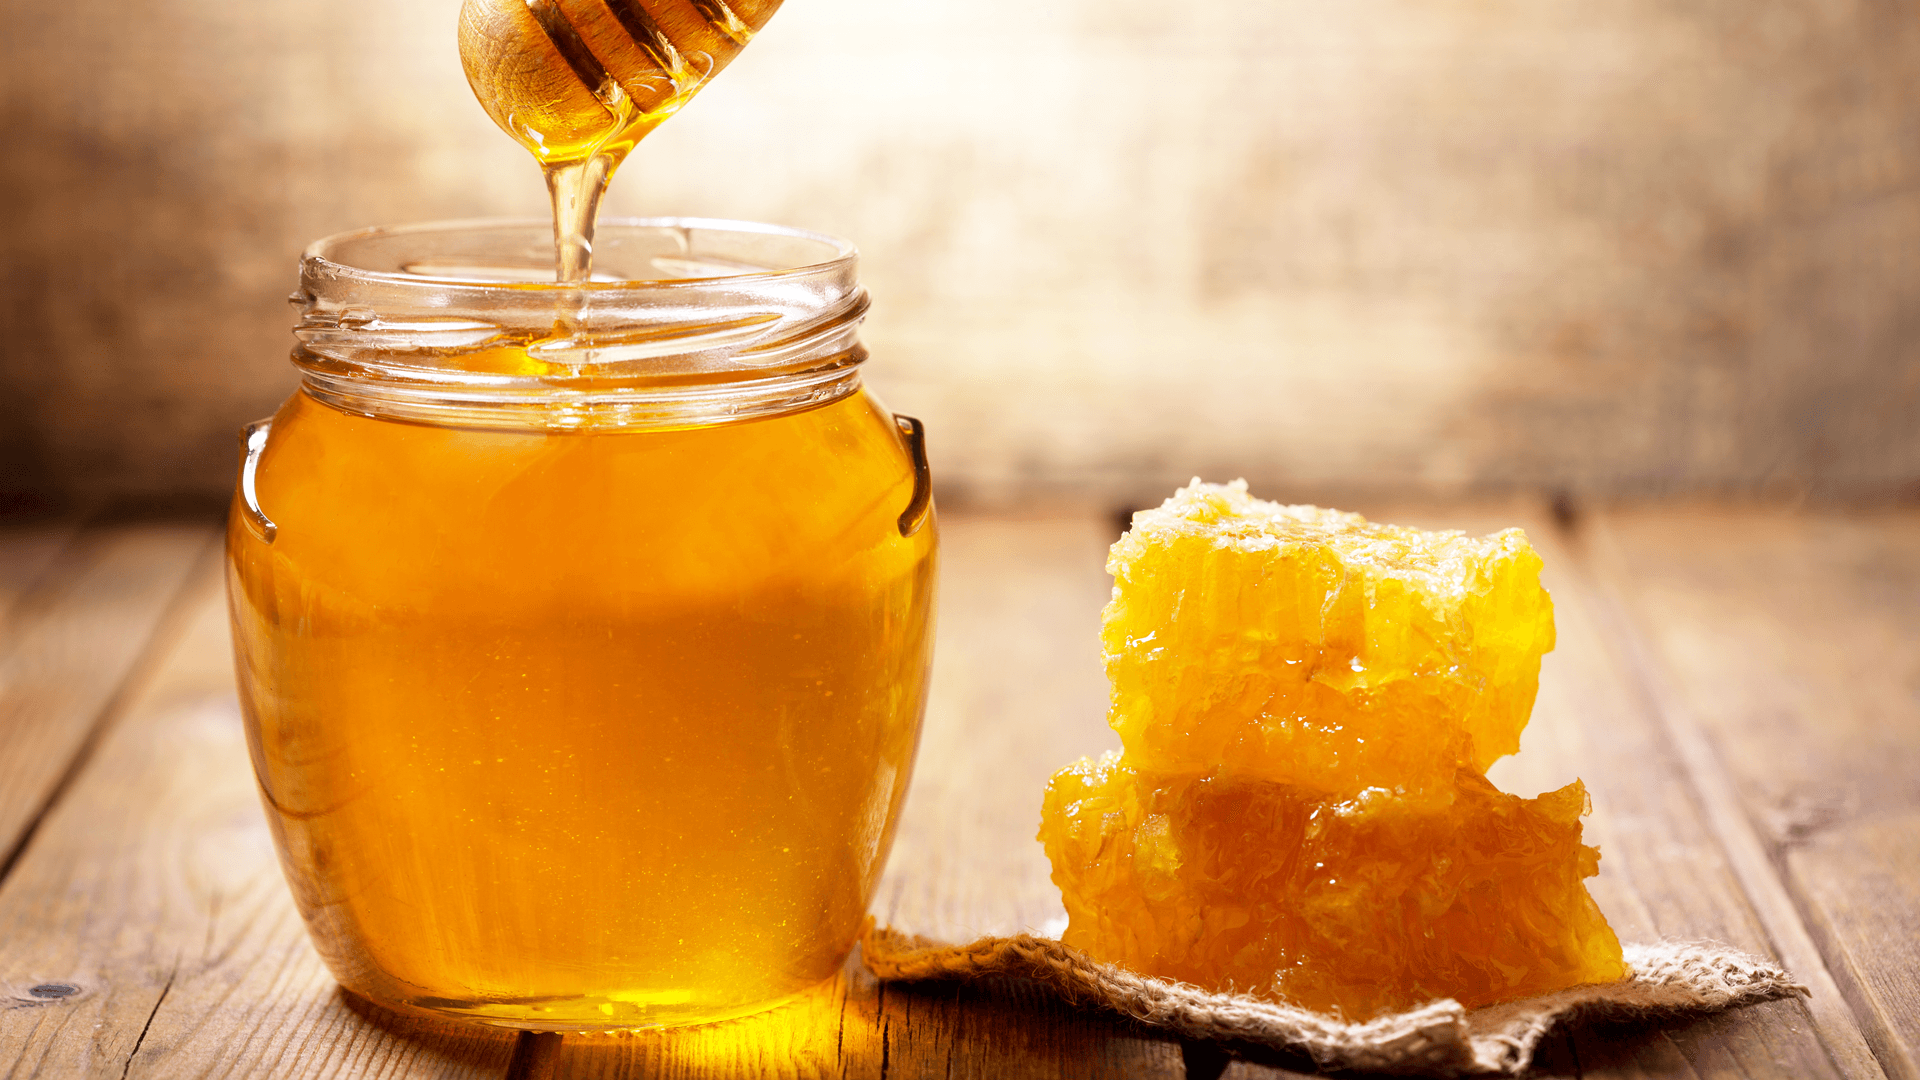 Dùng mật ong hàng ngày có thể giúp hạn chế nguy cơ bị các bệnh tim mạch không?